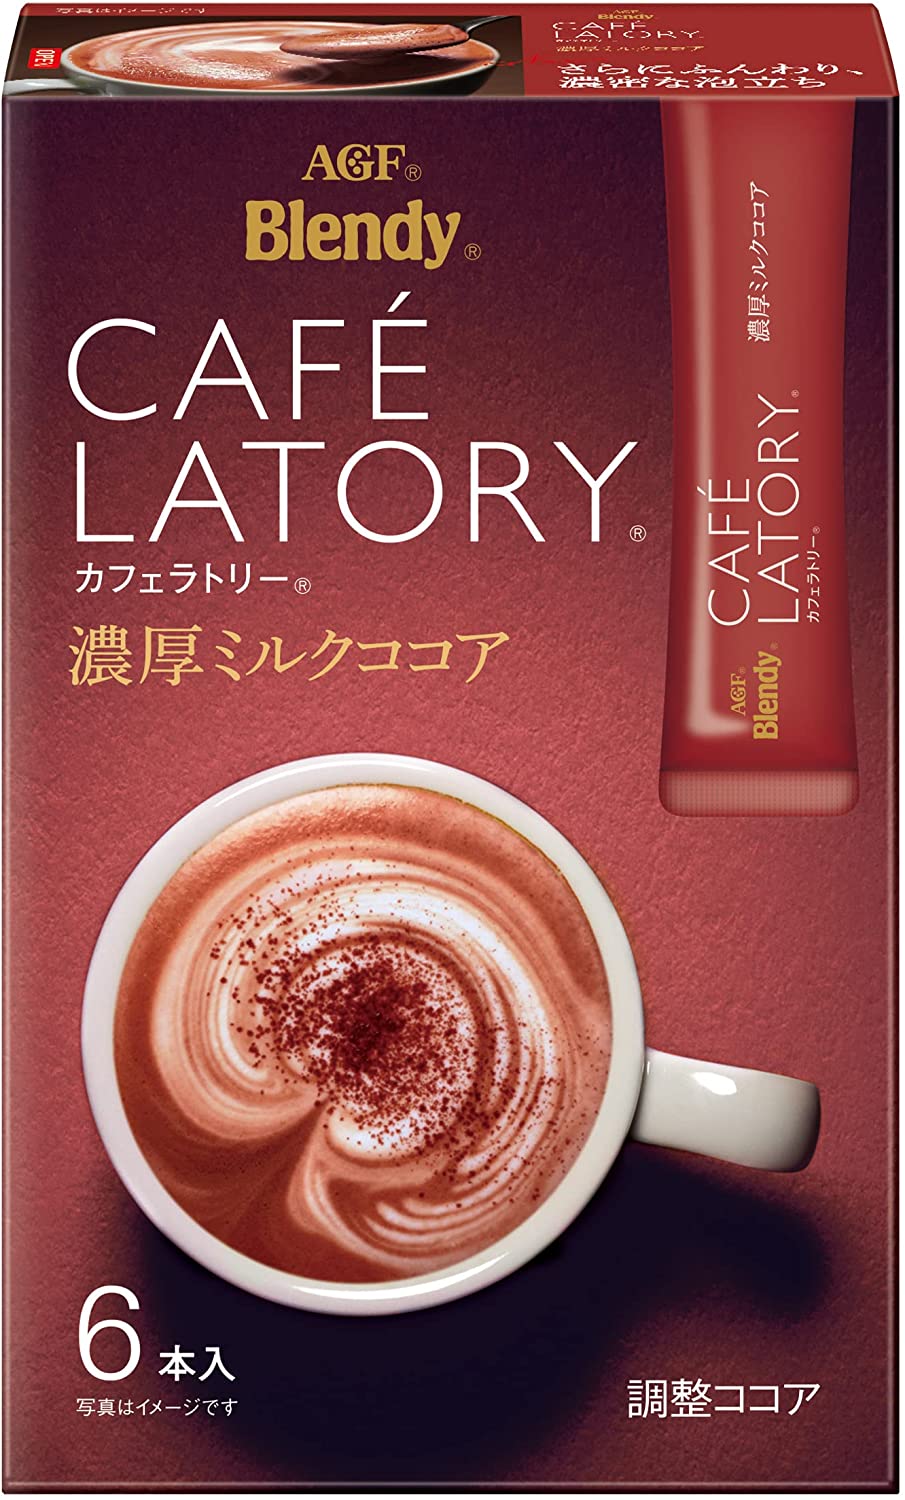 最新デザインの モダンタイムス ミルクココア 430g 30杯分 日本ヒルスコーヒー terahaku.jp